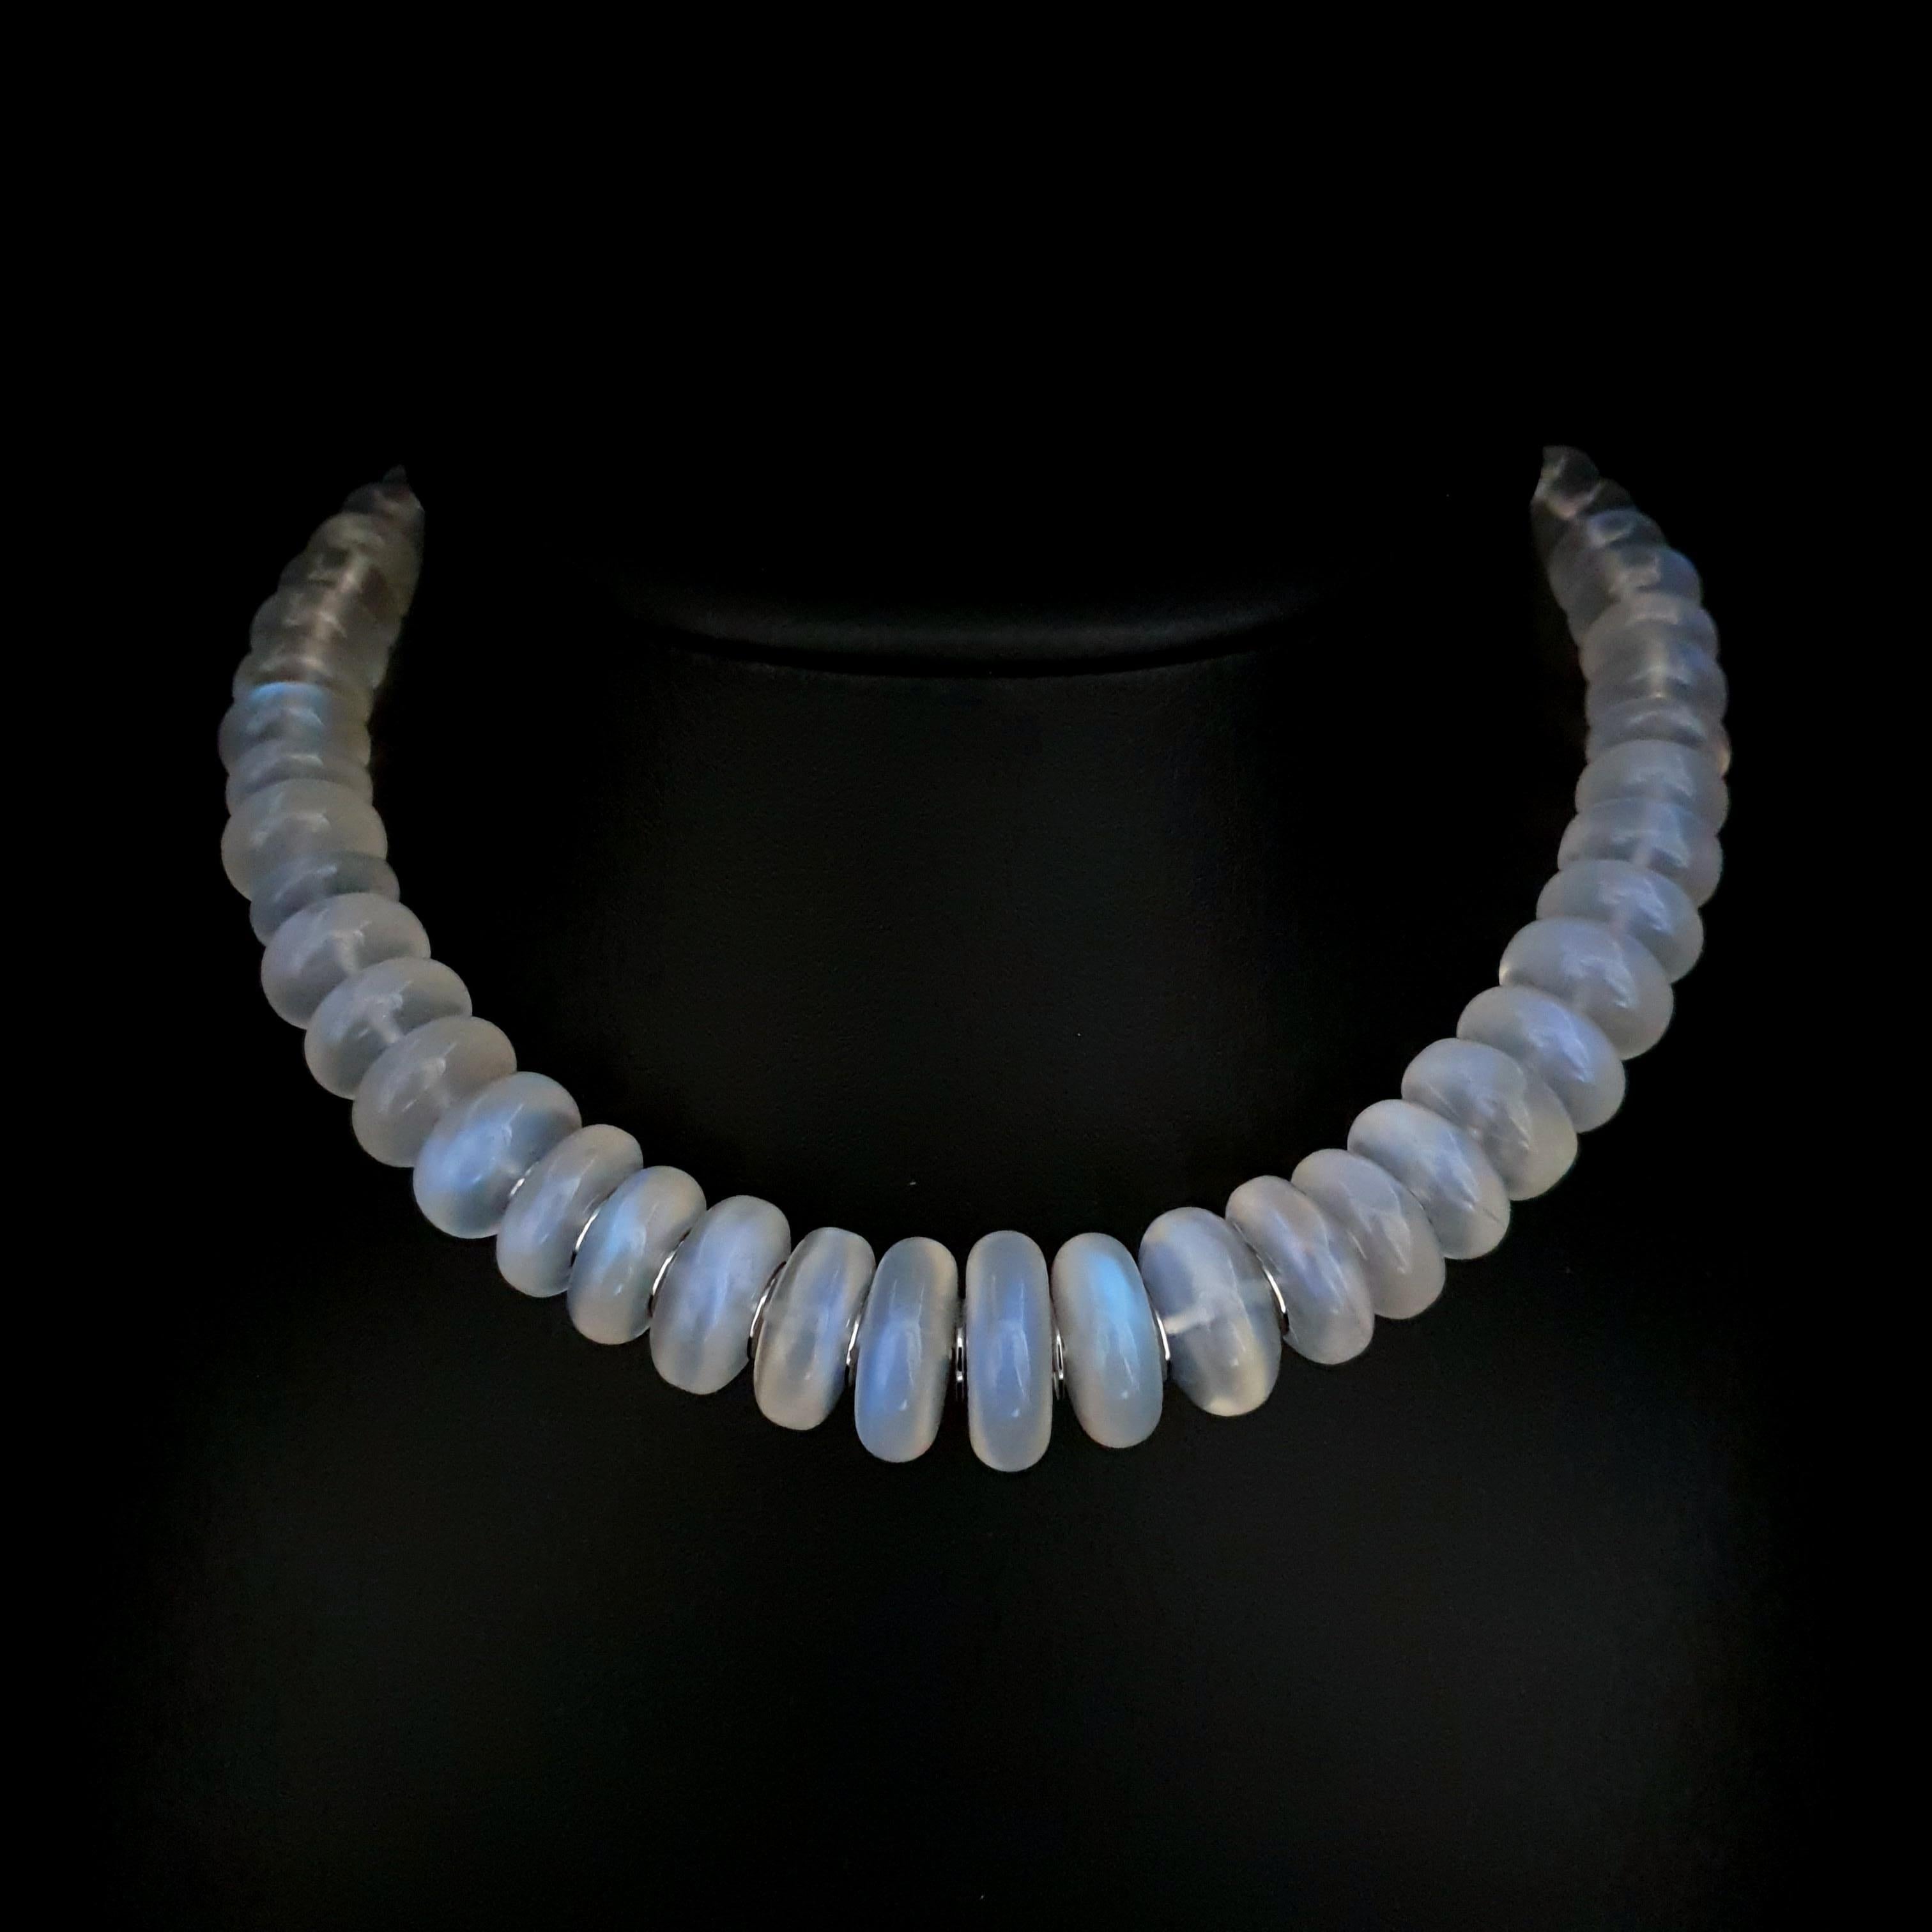 Diese Perlenkette aus natürlichem blauen Mondstein mit 18 Karat Weißgold ist vollständig handgefertigt. Sowohl das Schneiden als auch die Vergoldung sind in deutscher Qualität ausgeführt. Der Schraubverschluss ist einfach zu bedienen und sehr